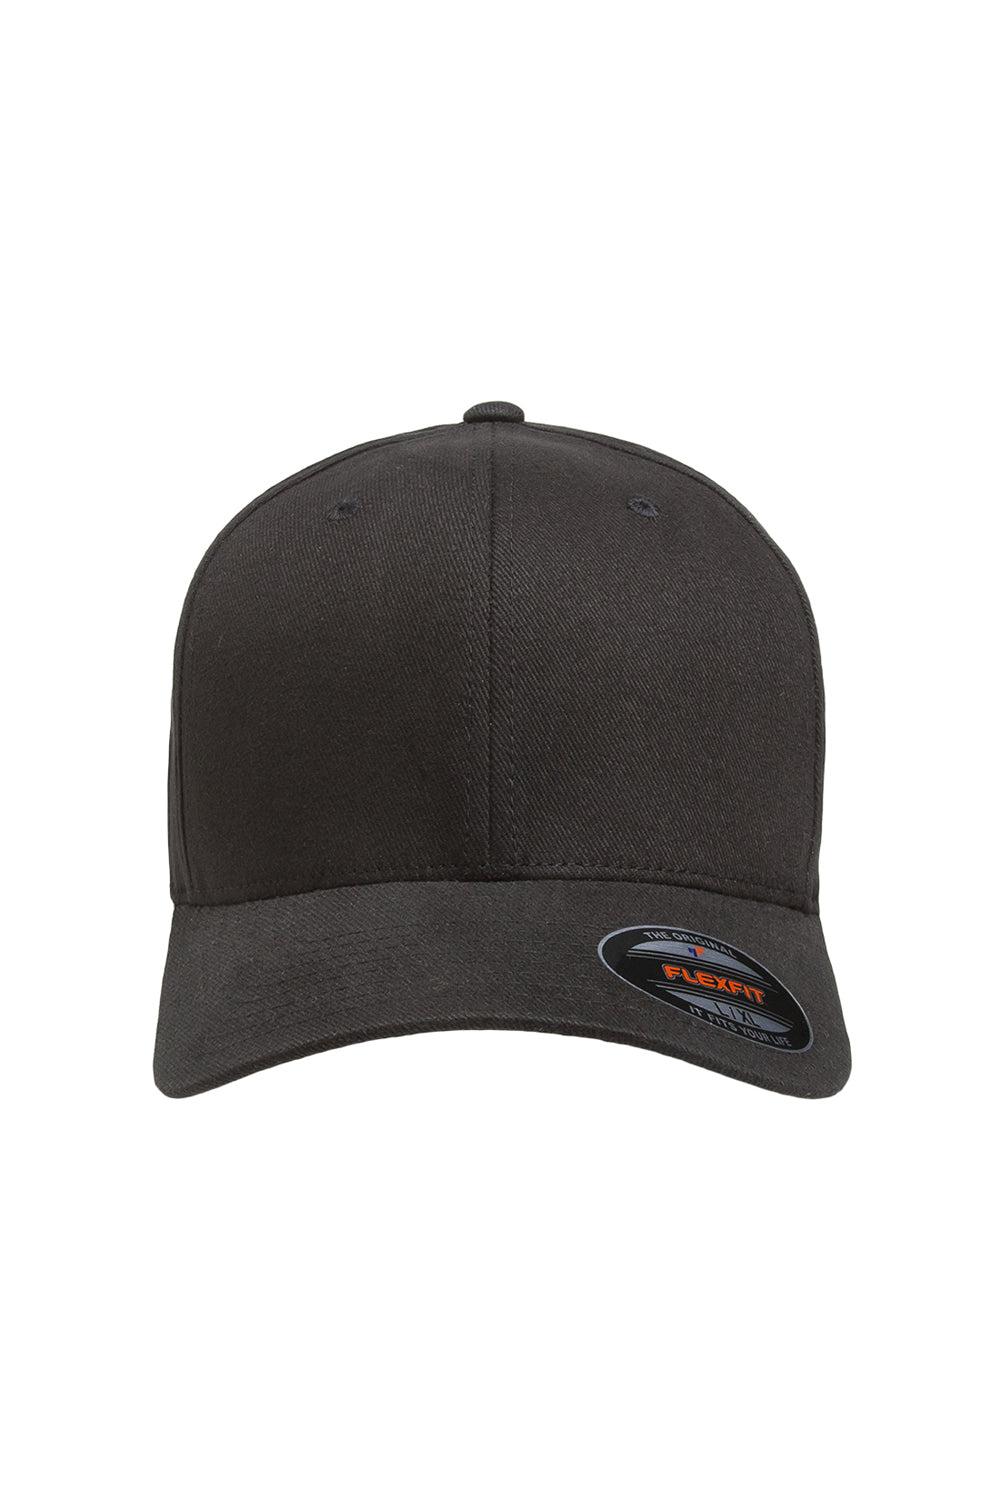 Flexfit 6377 Mens Stretch Fit Hat Black Front